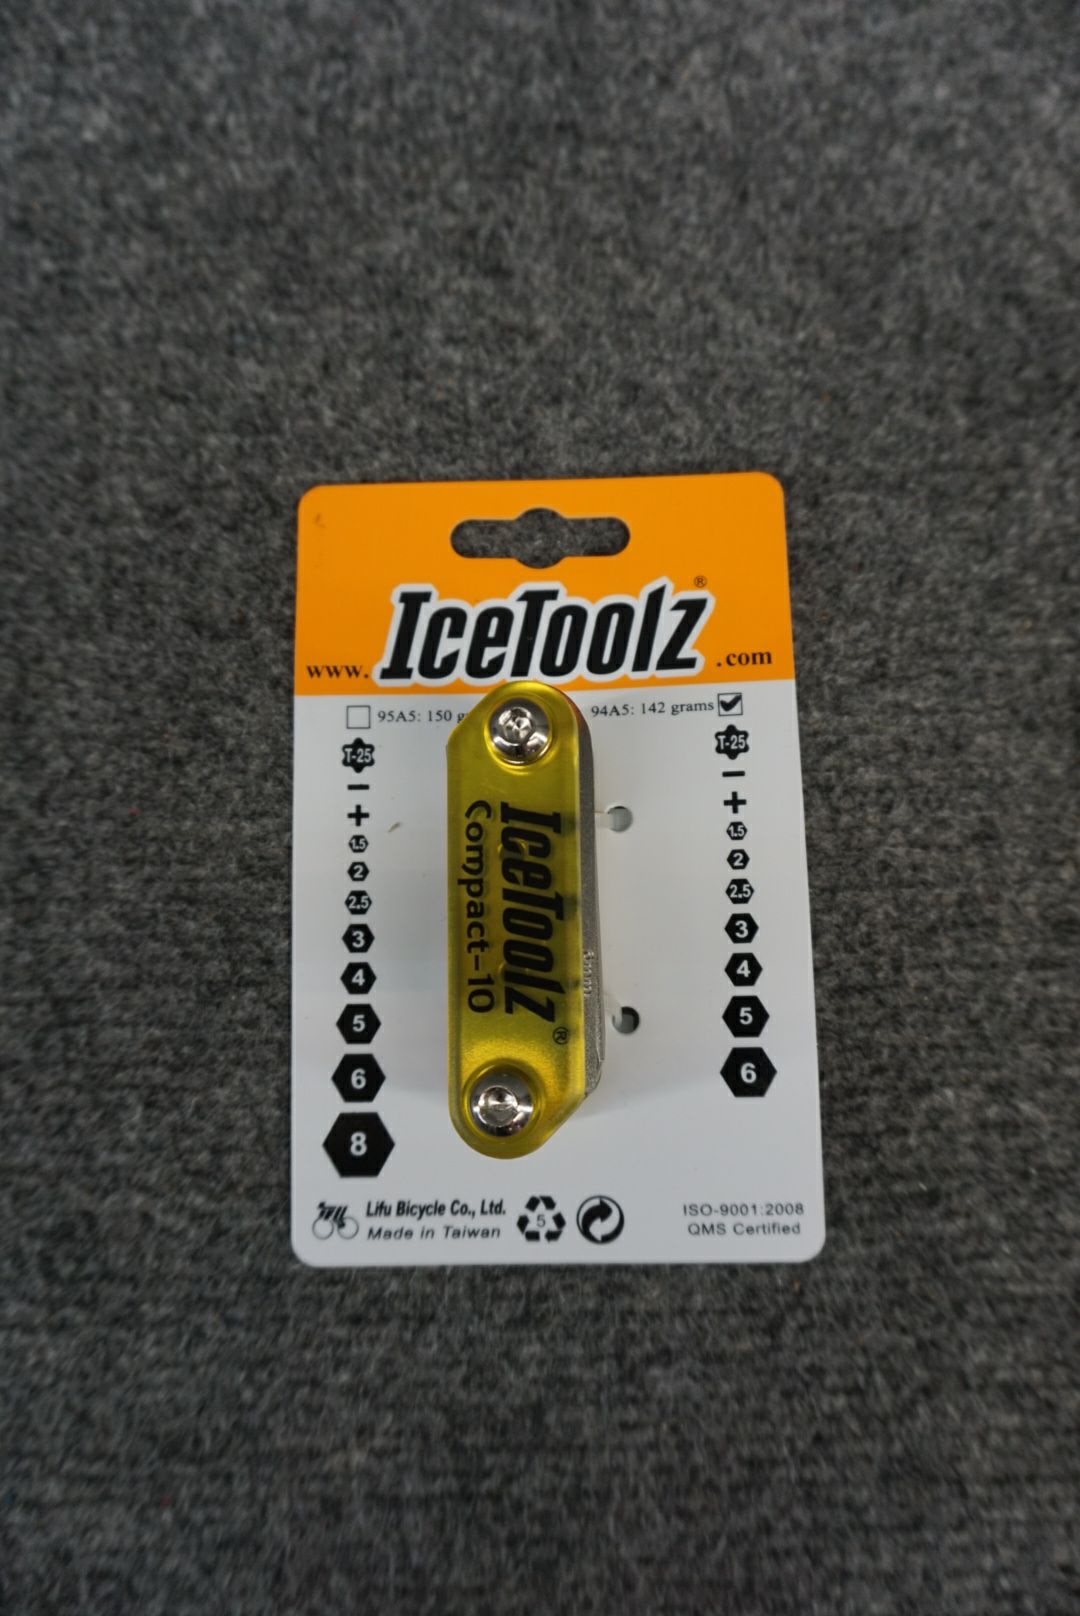 IceToolz Multi-Tool